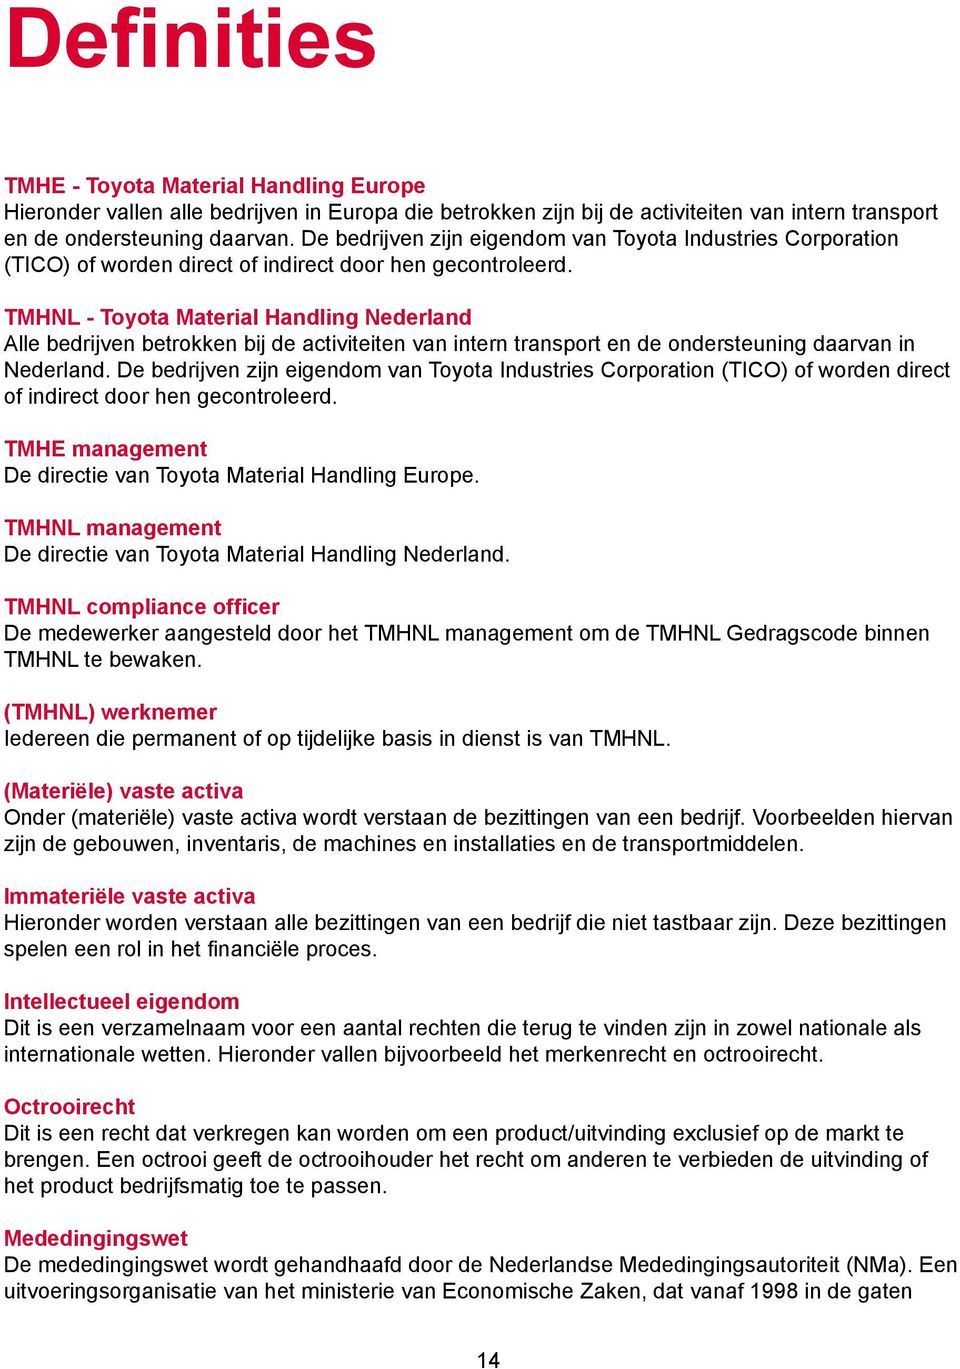 TMHNL - Toyota Material Handling Nederland Alle bedrijven betrokken bij de activiteiten van intern transport en de ondersteuning daarvan in Nederland.